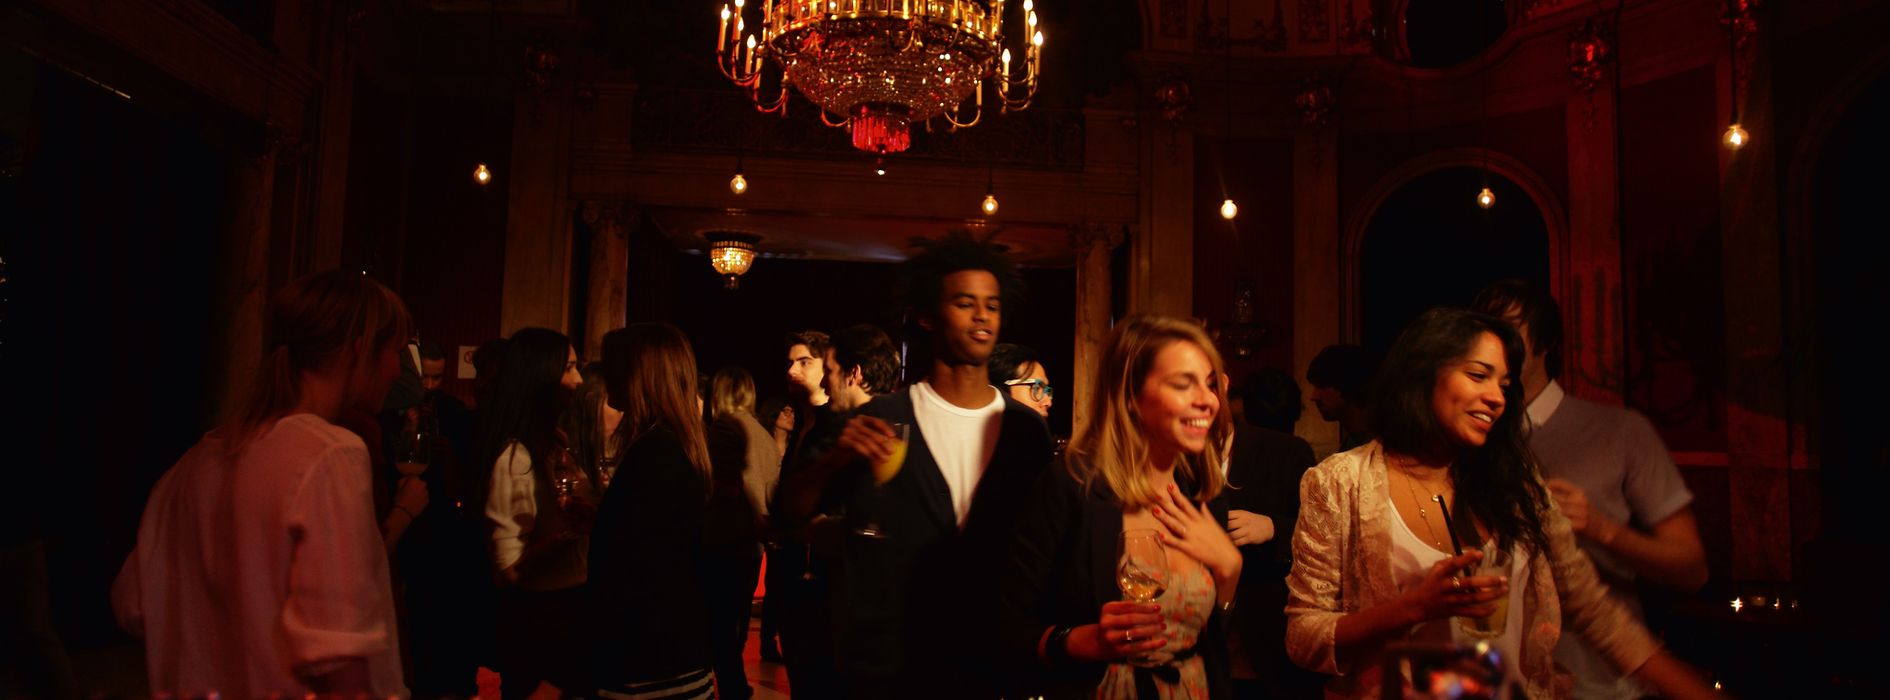 Emberek táncolnak a Volkstheater (Népszínház) vörös bárjában.